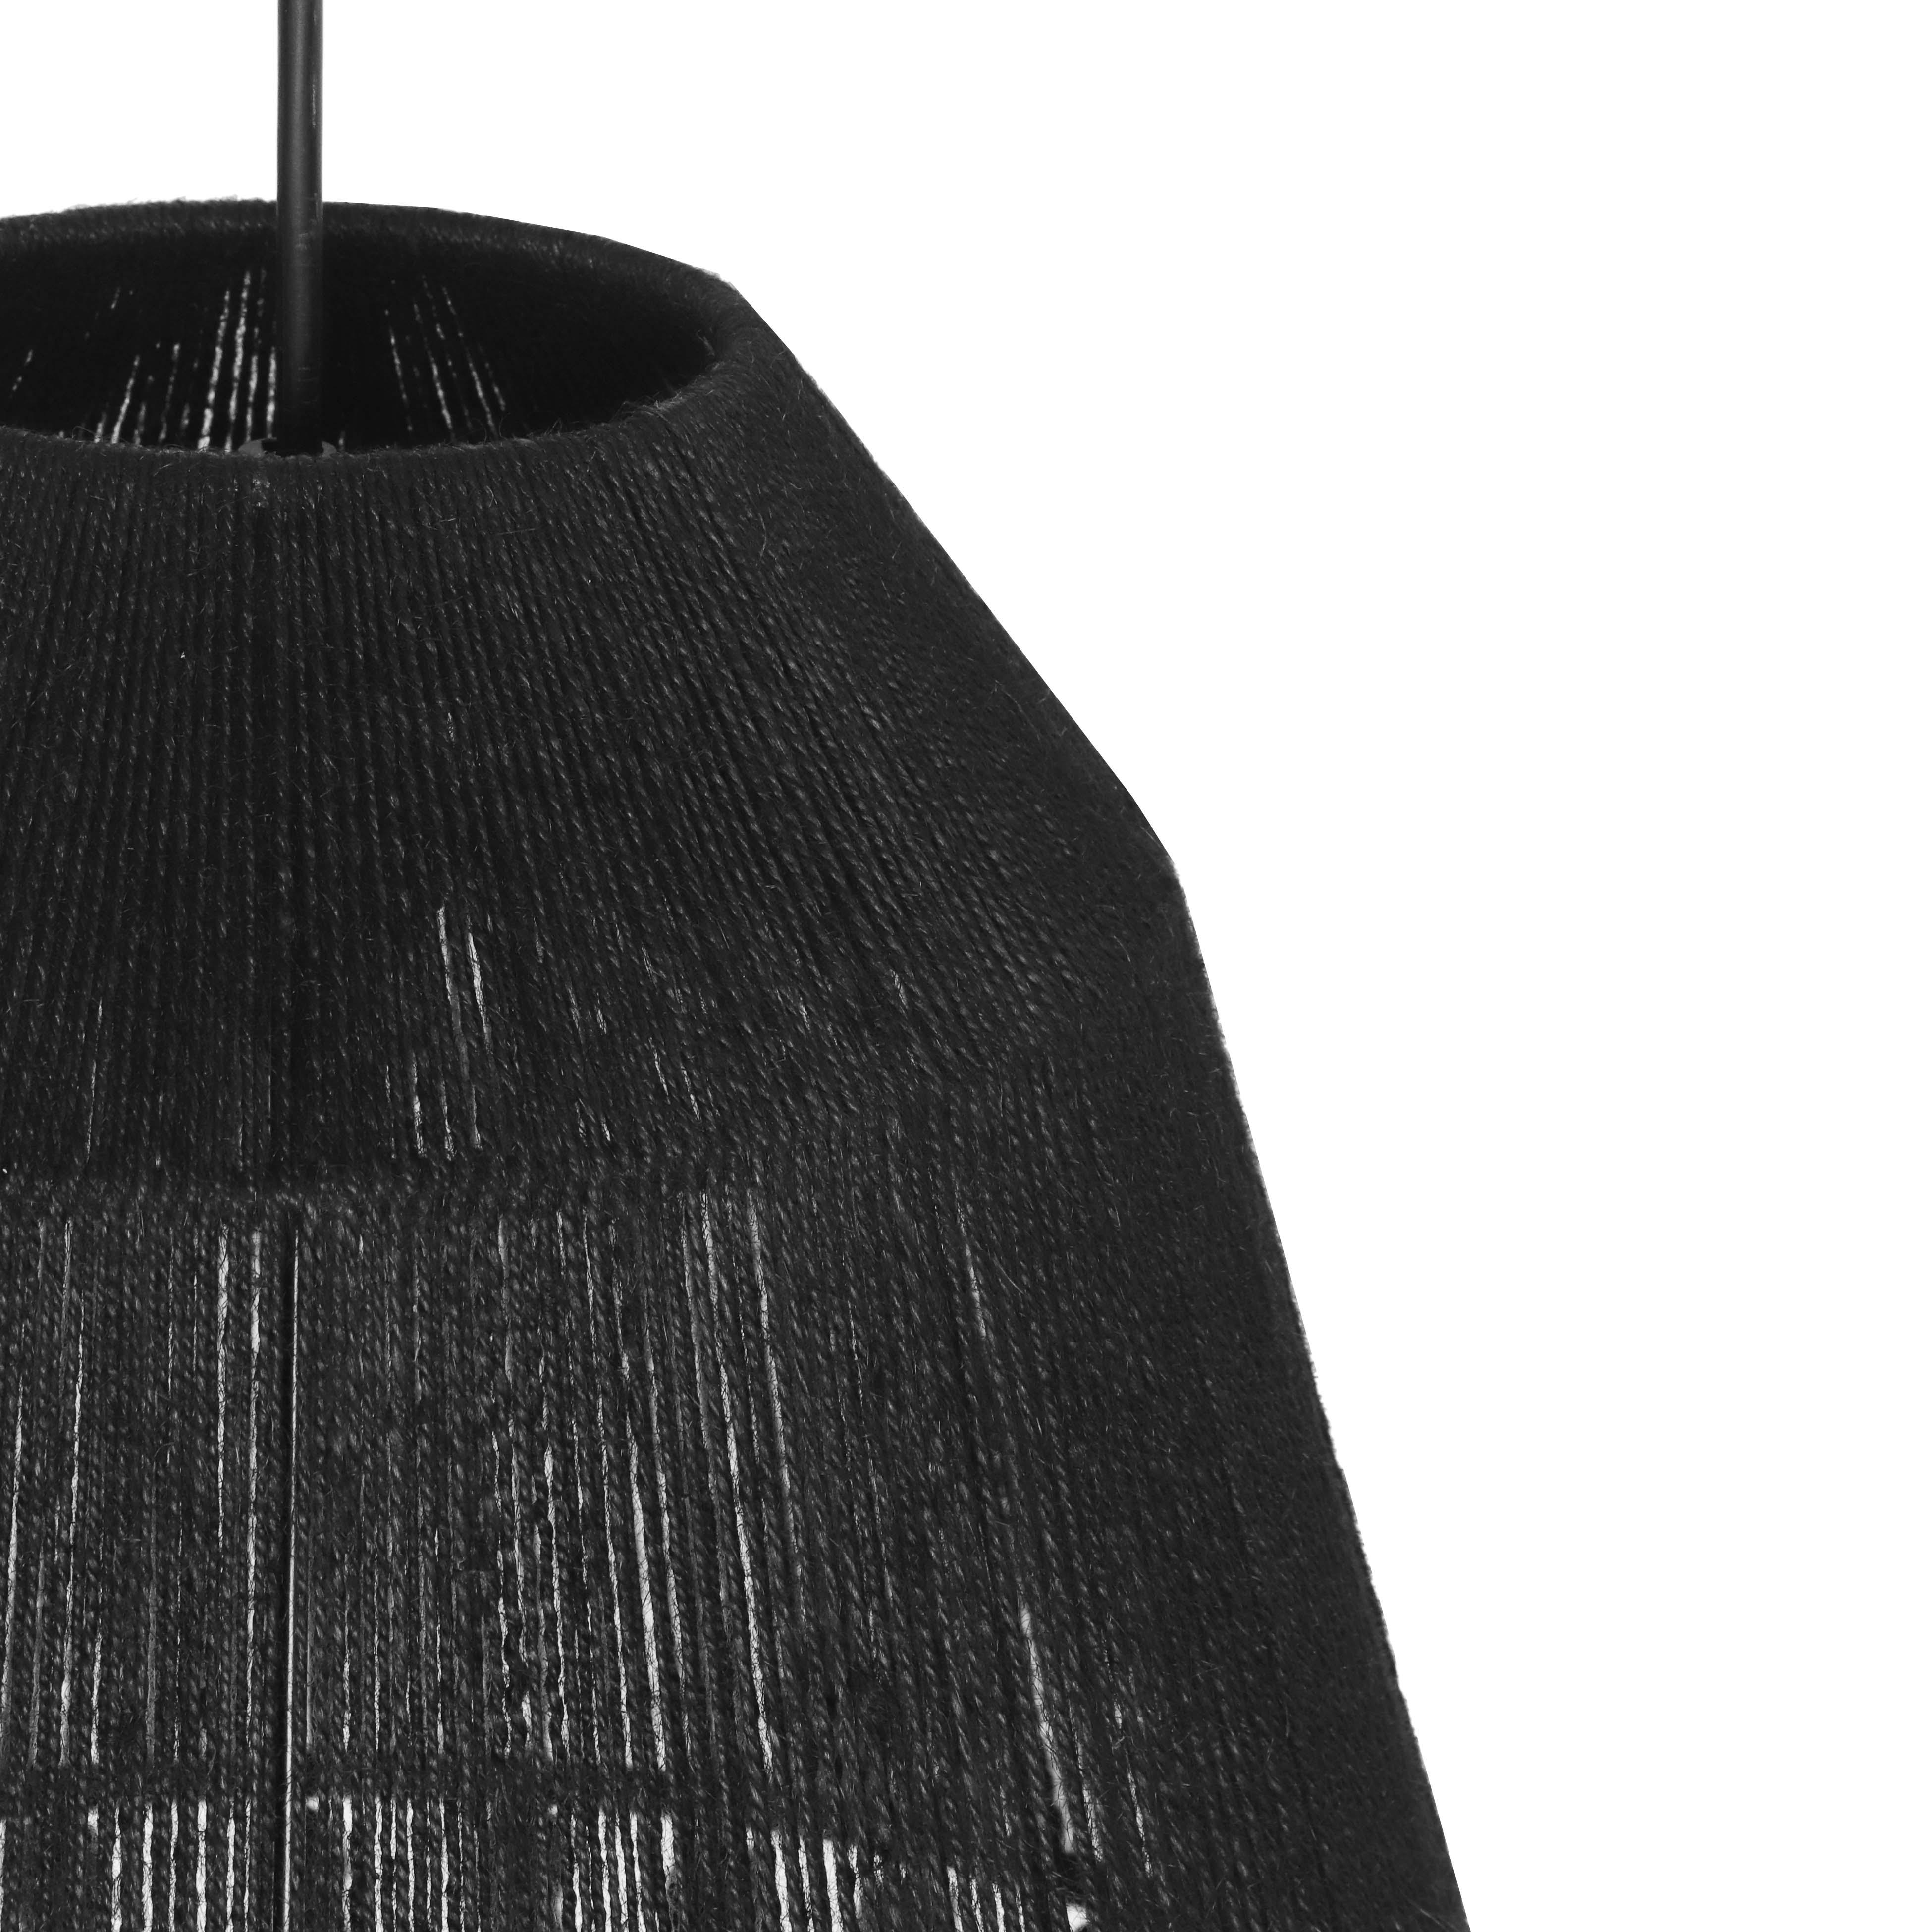 Bokaro Black Jute Pendant Lamp - Image 4